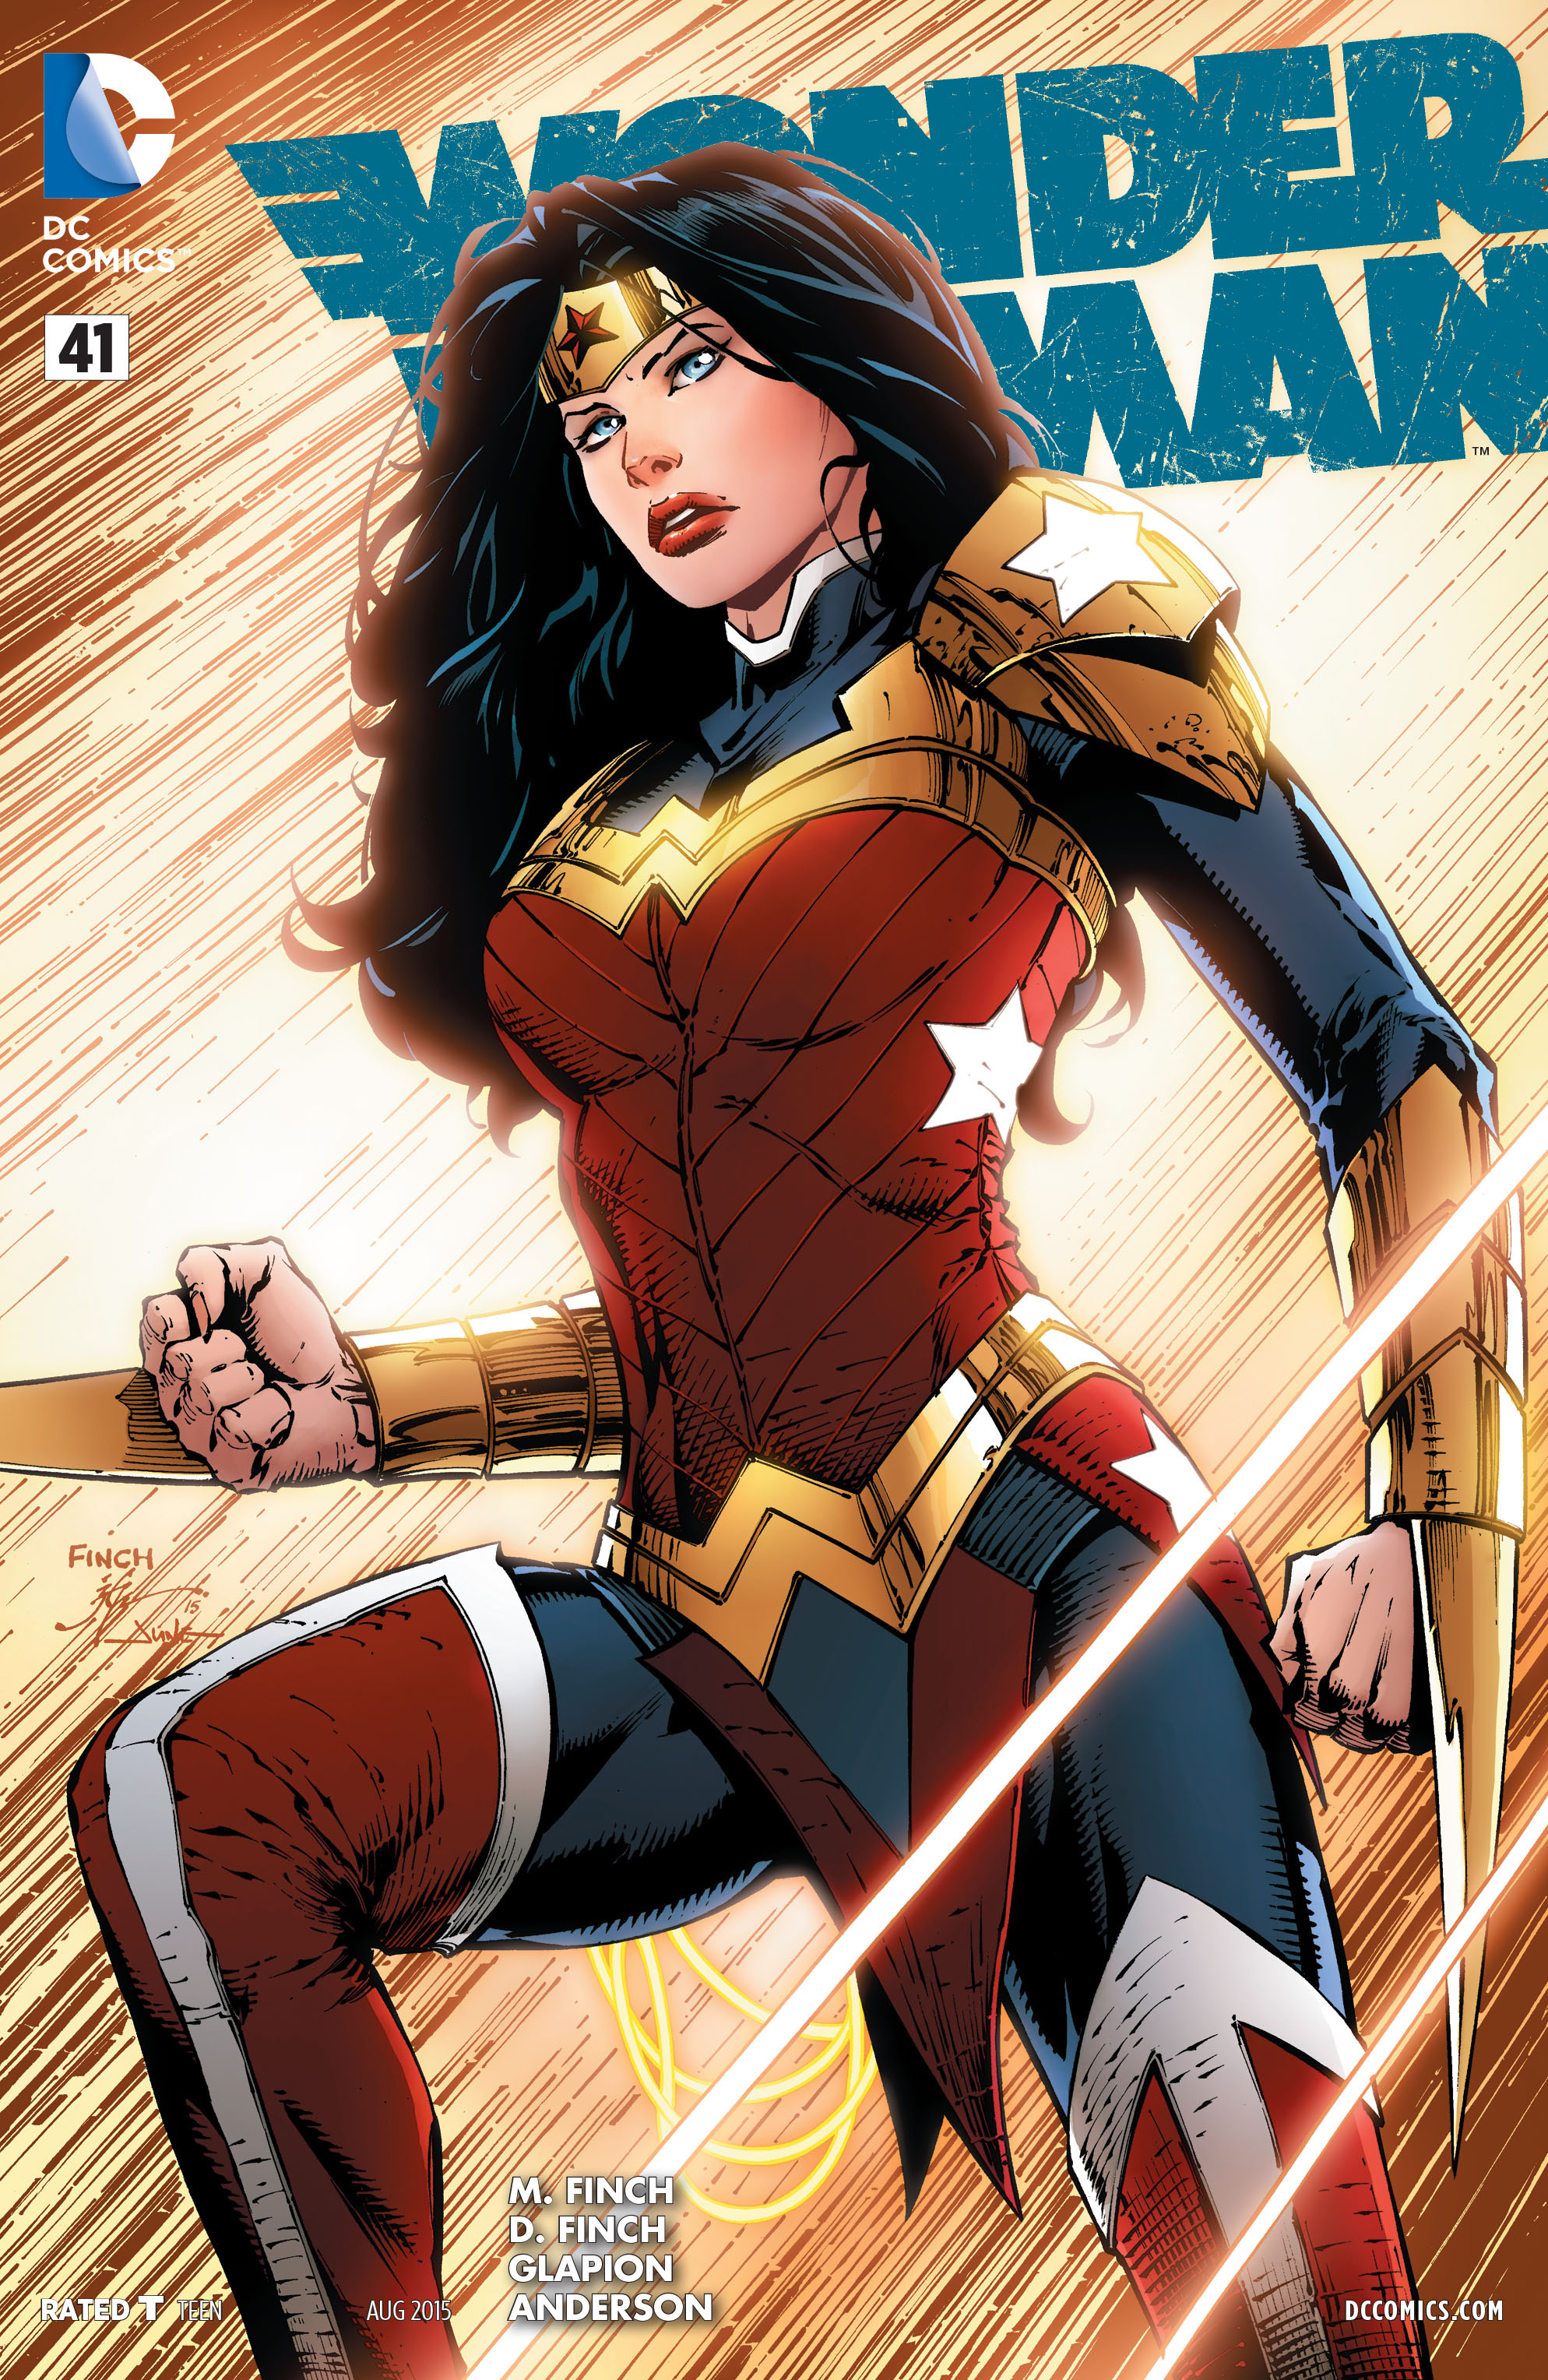 Read Wonder Woman Issue Online